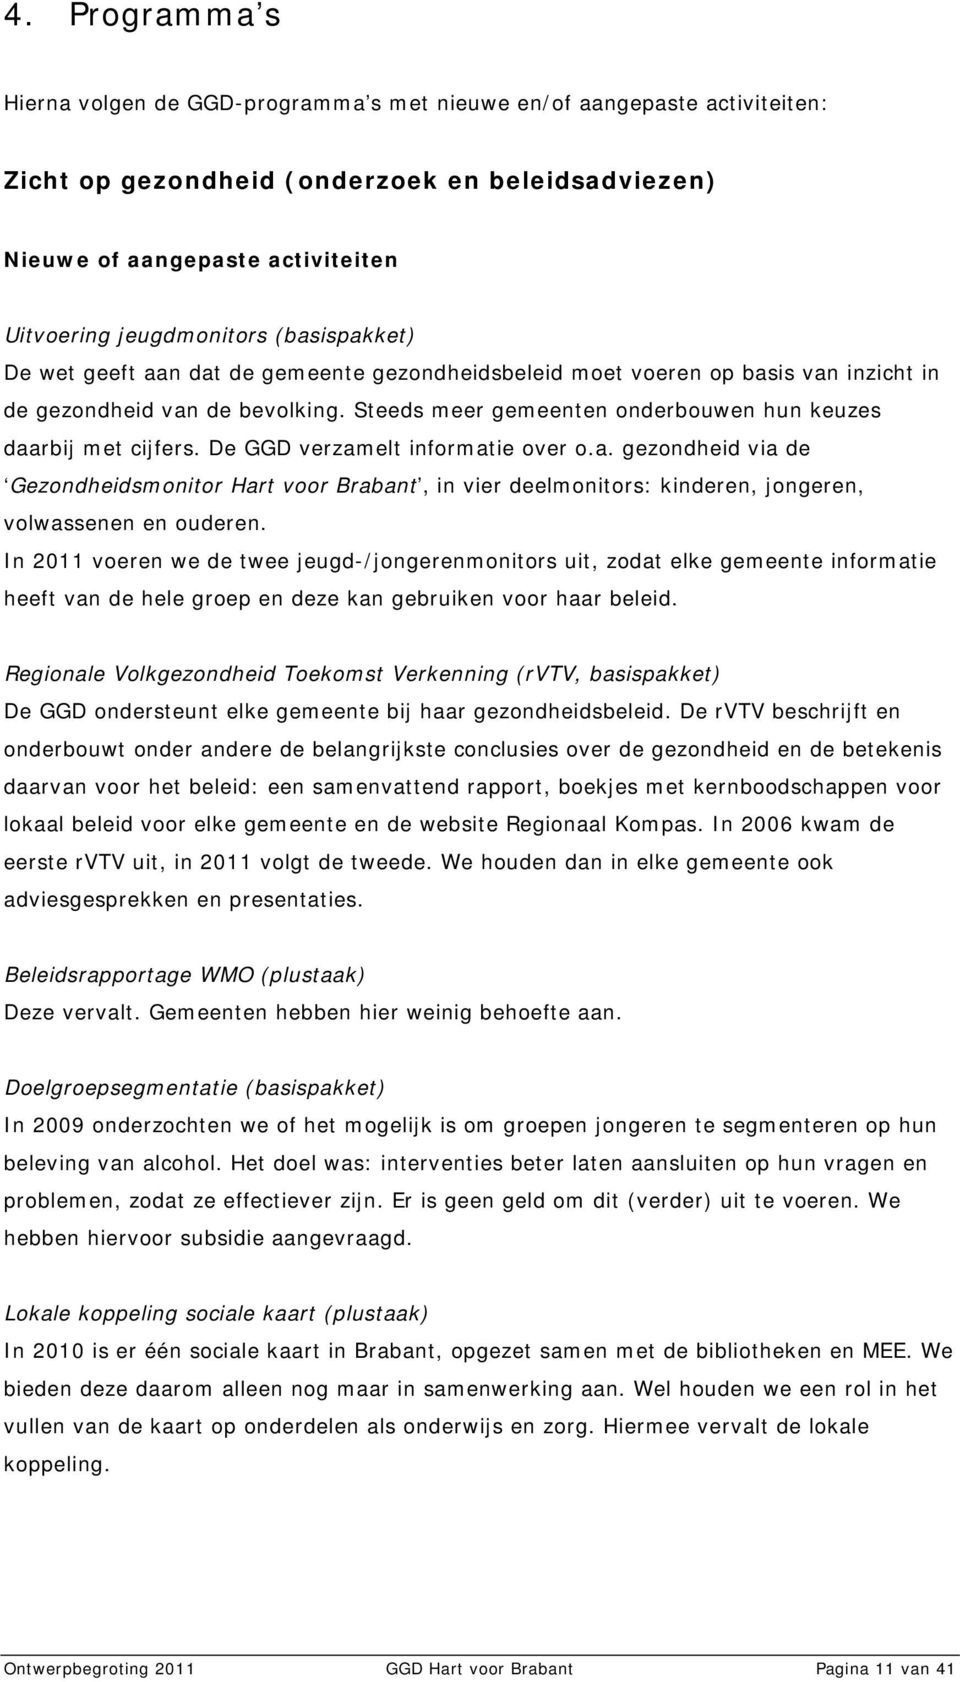 De GGD verzamelt informatie over o.a. gezondheid via de Gezondheidsmonitor Hart voor Brabant, in vier deelmonitors: kinderen, jongeren, volwassenen en ouderen.